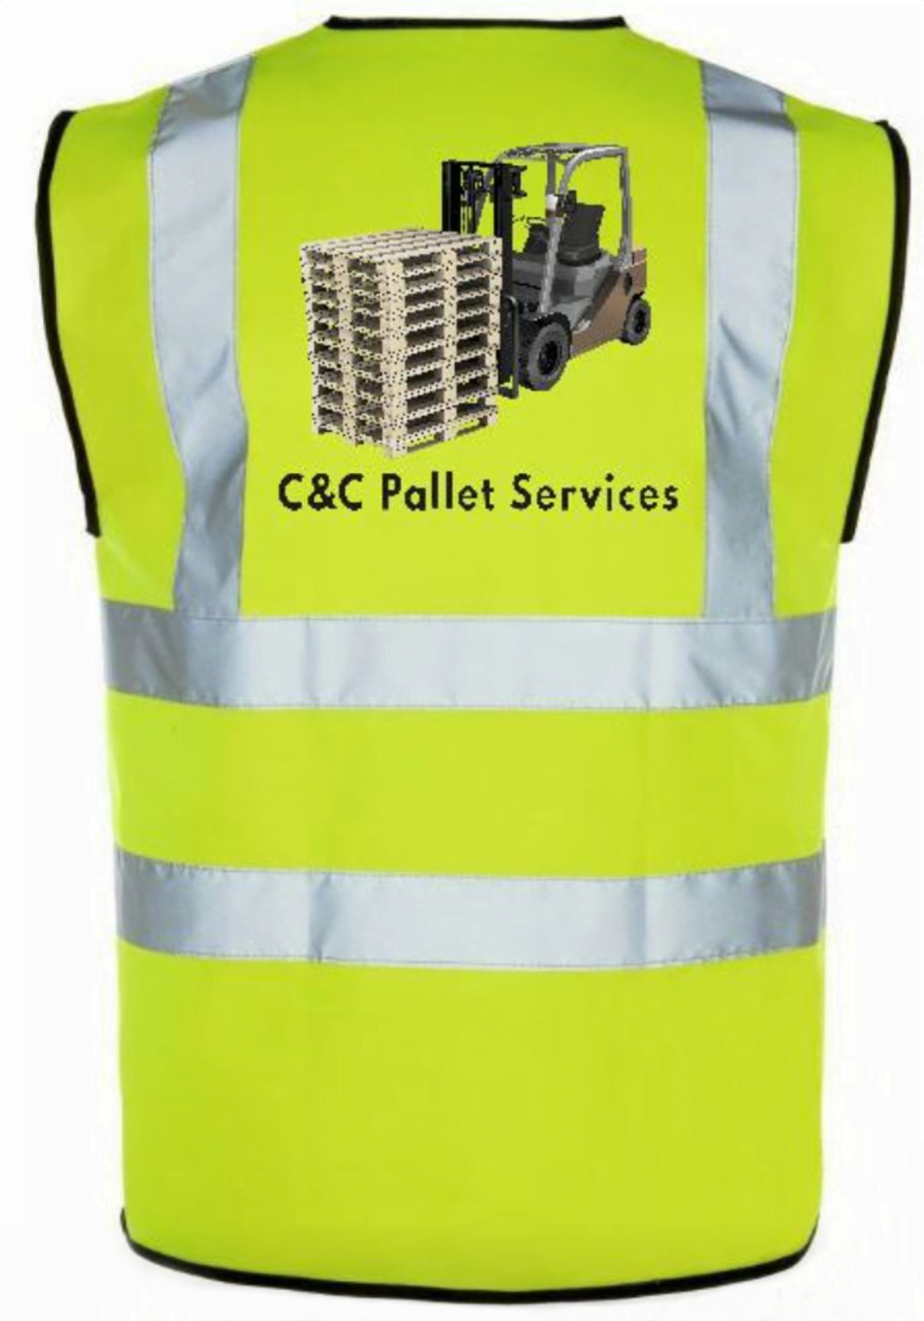 cc-pallet-service